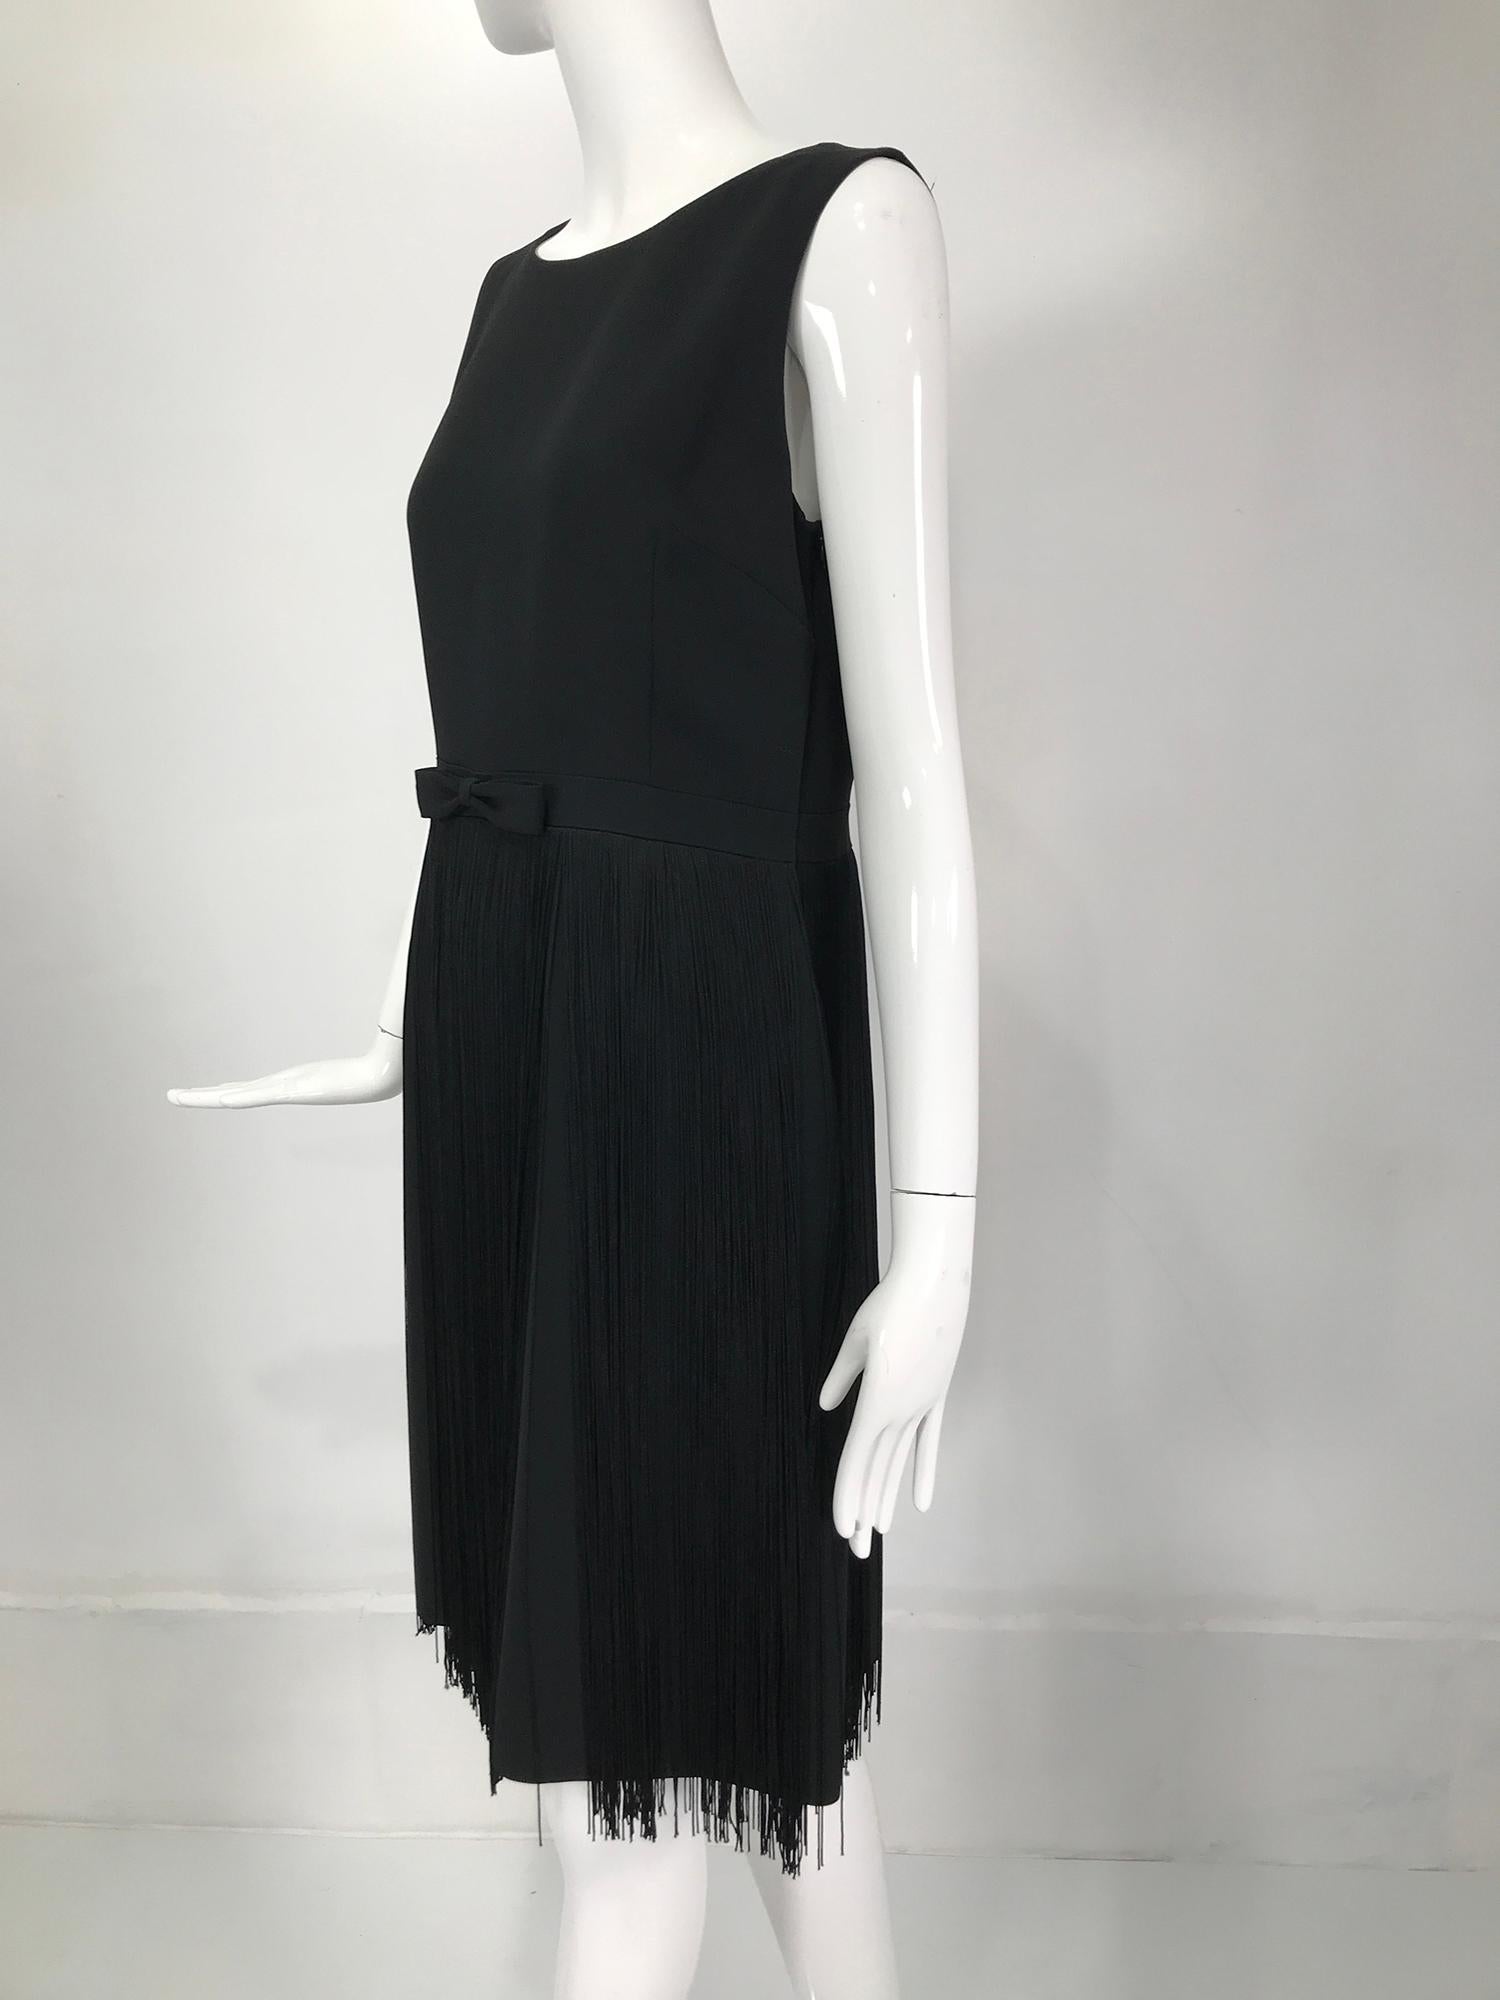 Moschino Sleeveless Black Crepe Bow Waist Fringe Skirt Dress 1990s For Sale 6